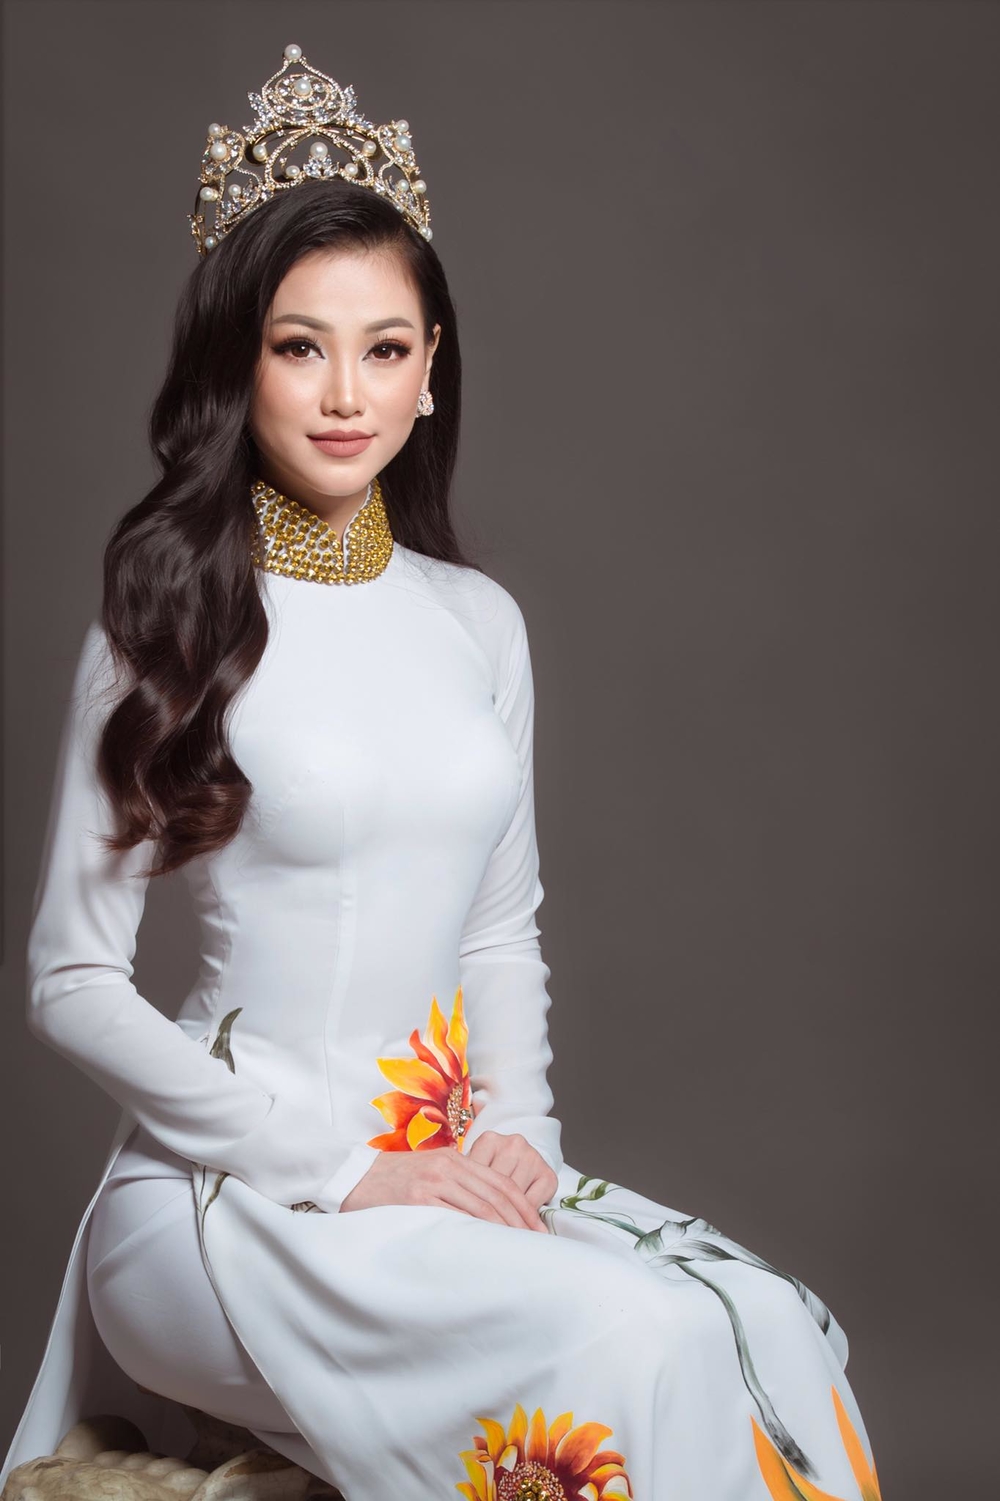 Мисс Земля 2018 Phuong Khanh Nguyen фото